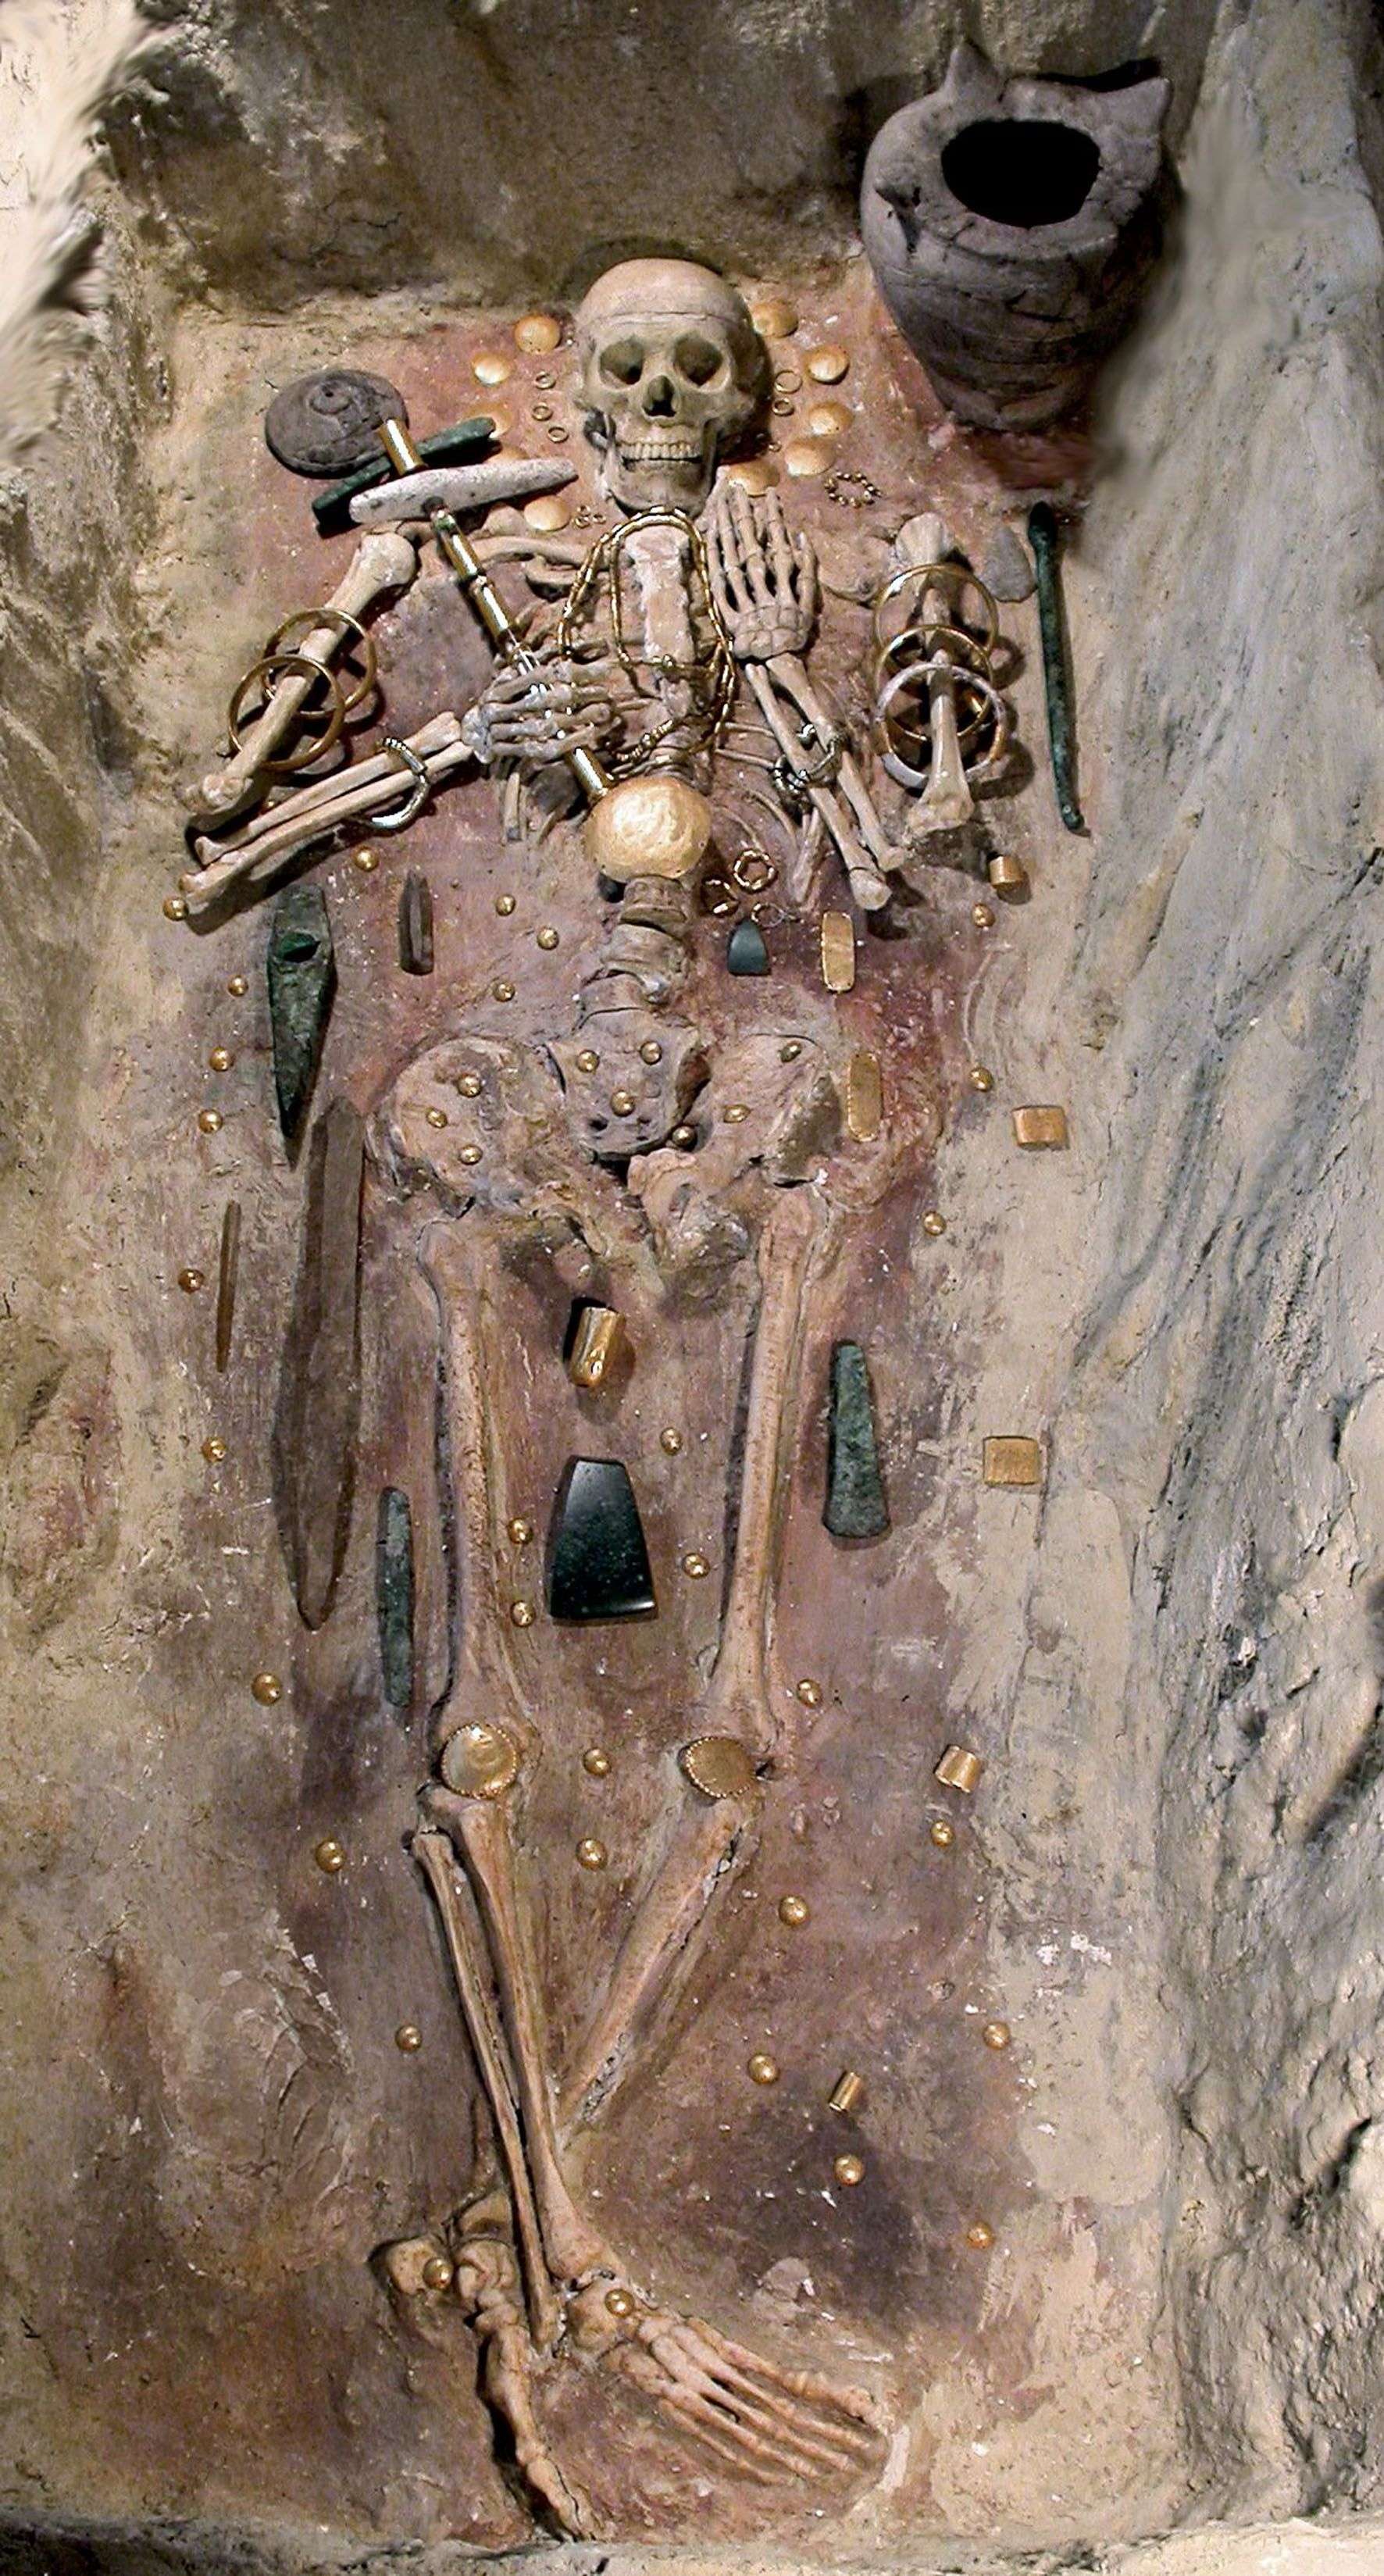 La nécropole néolithique de Varna, Bulgarie, vers - 4500 avant notre ère